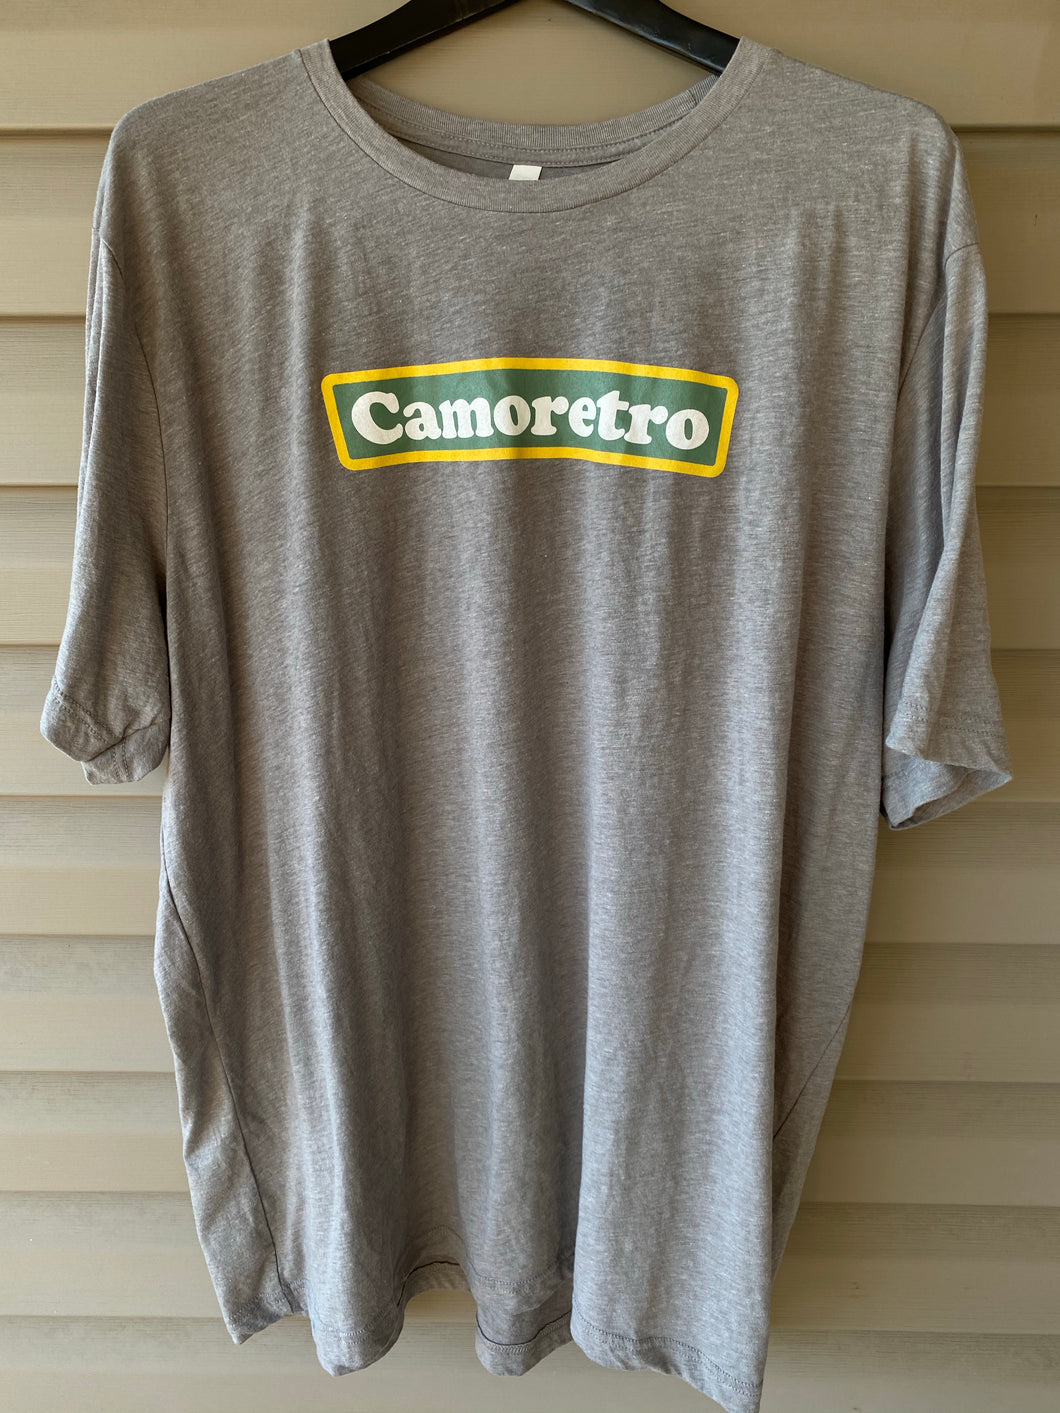 Camoretro Shirt (XXXL)